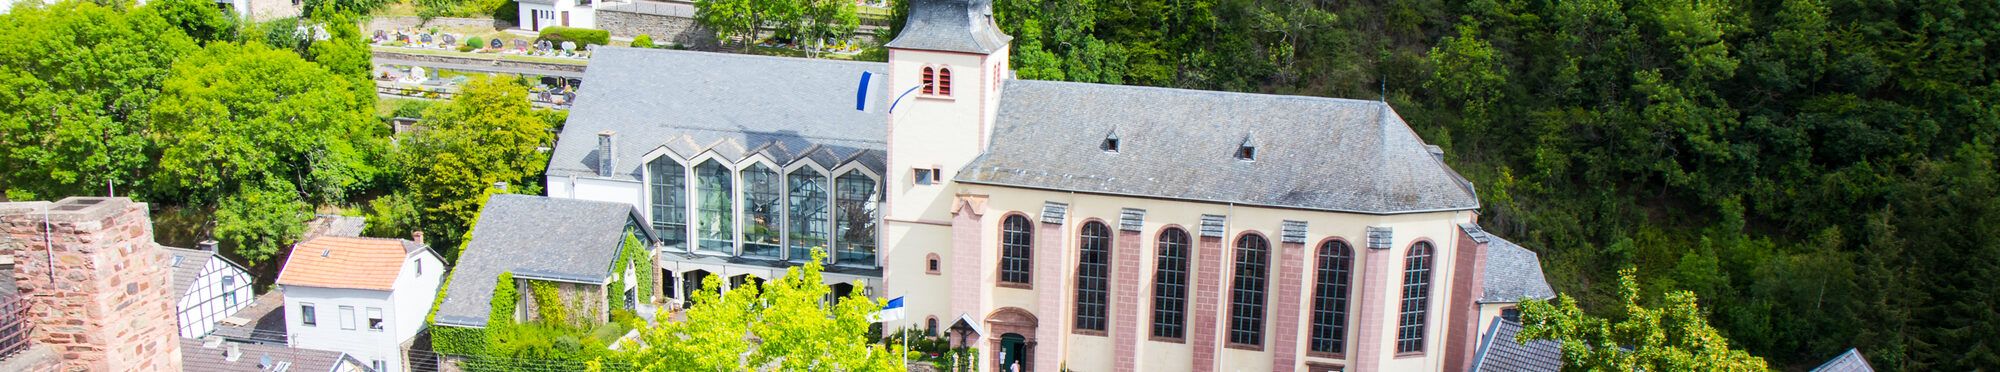 Blick auf St. Clemens + St. Salvator von der Burg aus